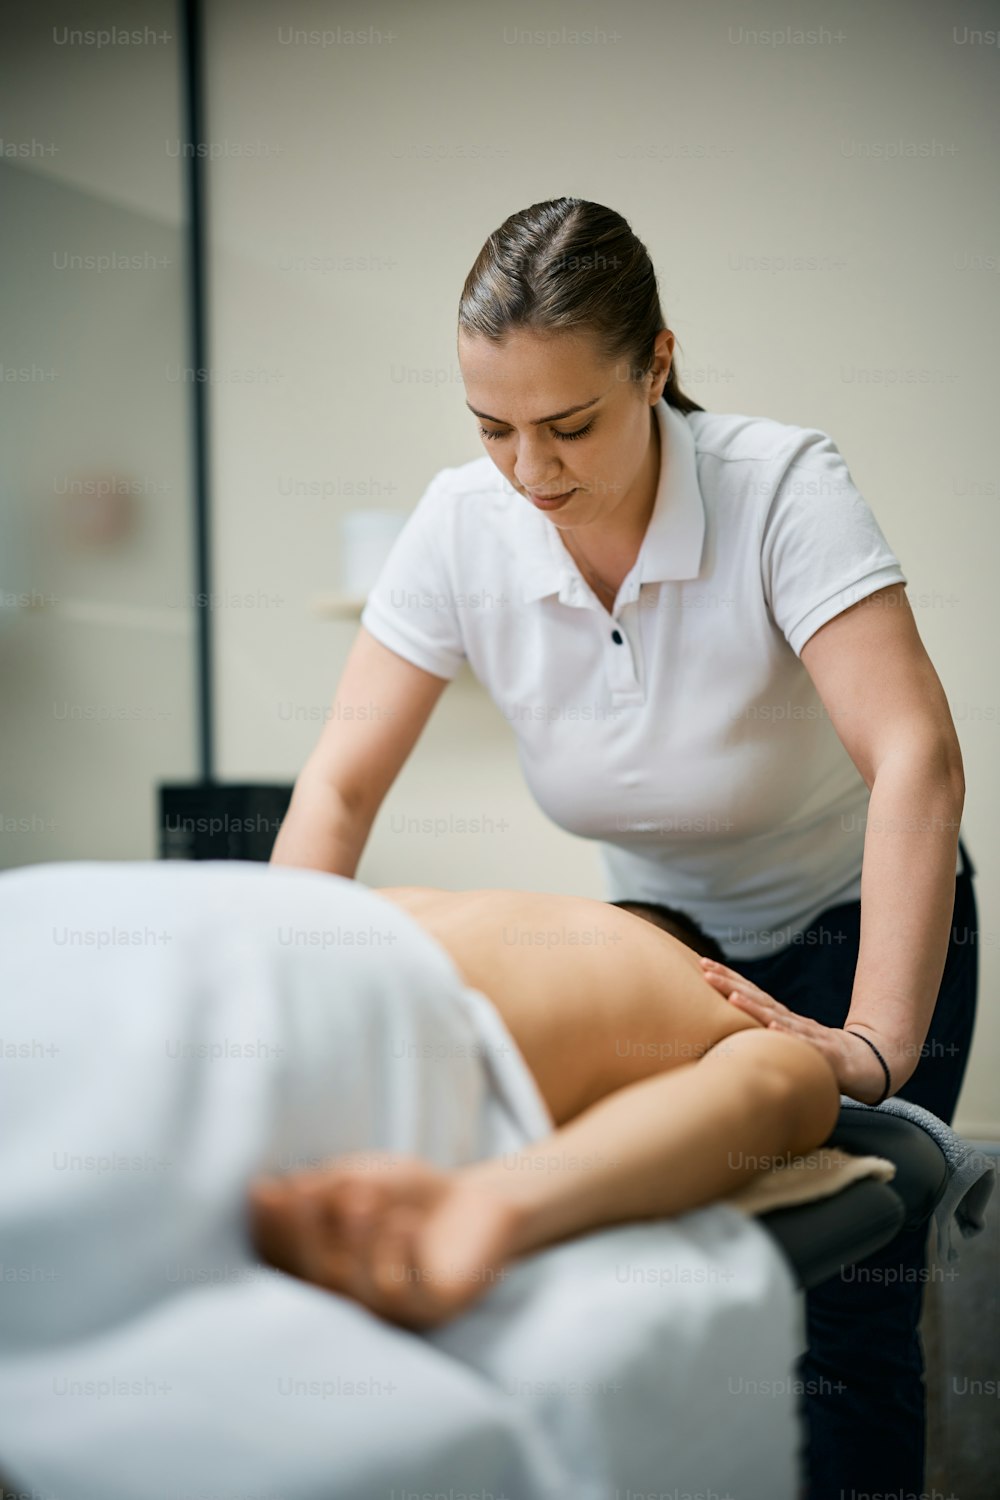 Fisioterapeuta feminina massageando as costas de um homem durante o tratamento no centro de fisioterapia.